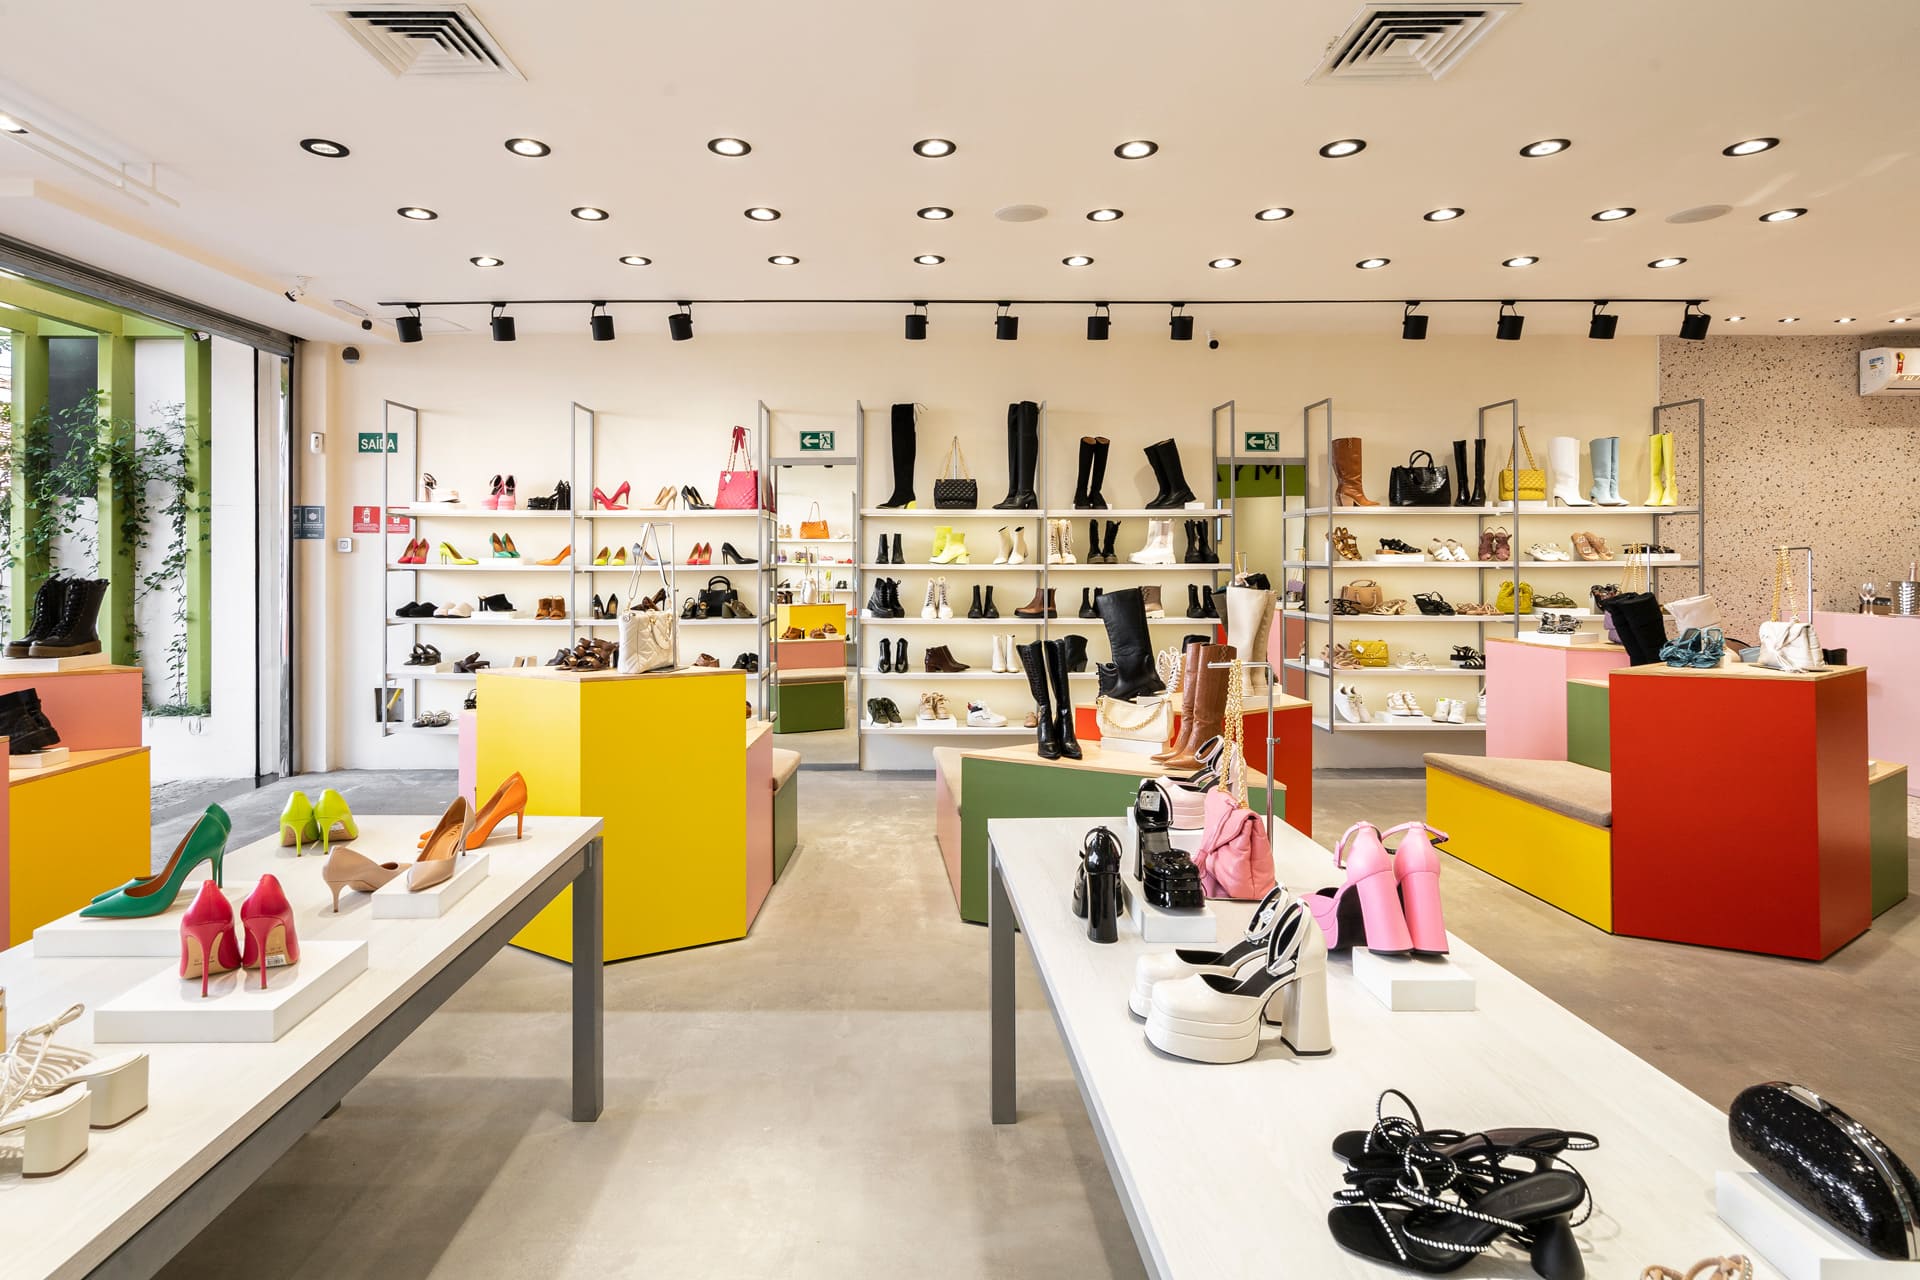 Arquitetura de interior de loja de sapatos, roupas e acessórios, MYA Hass.